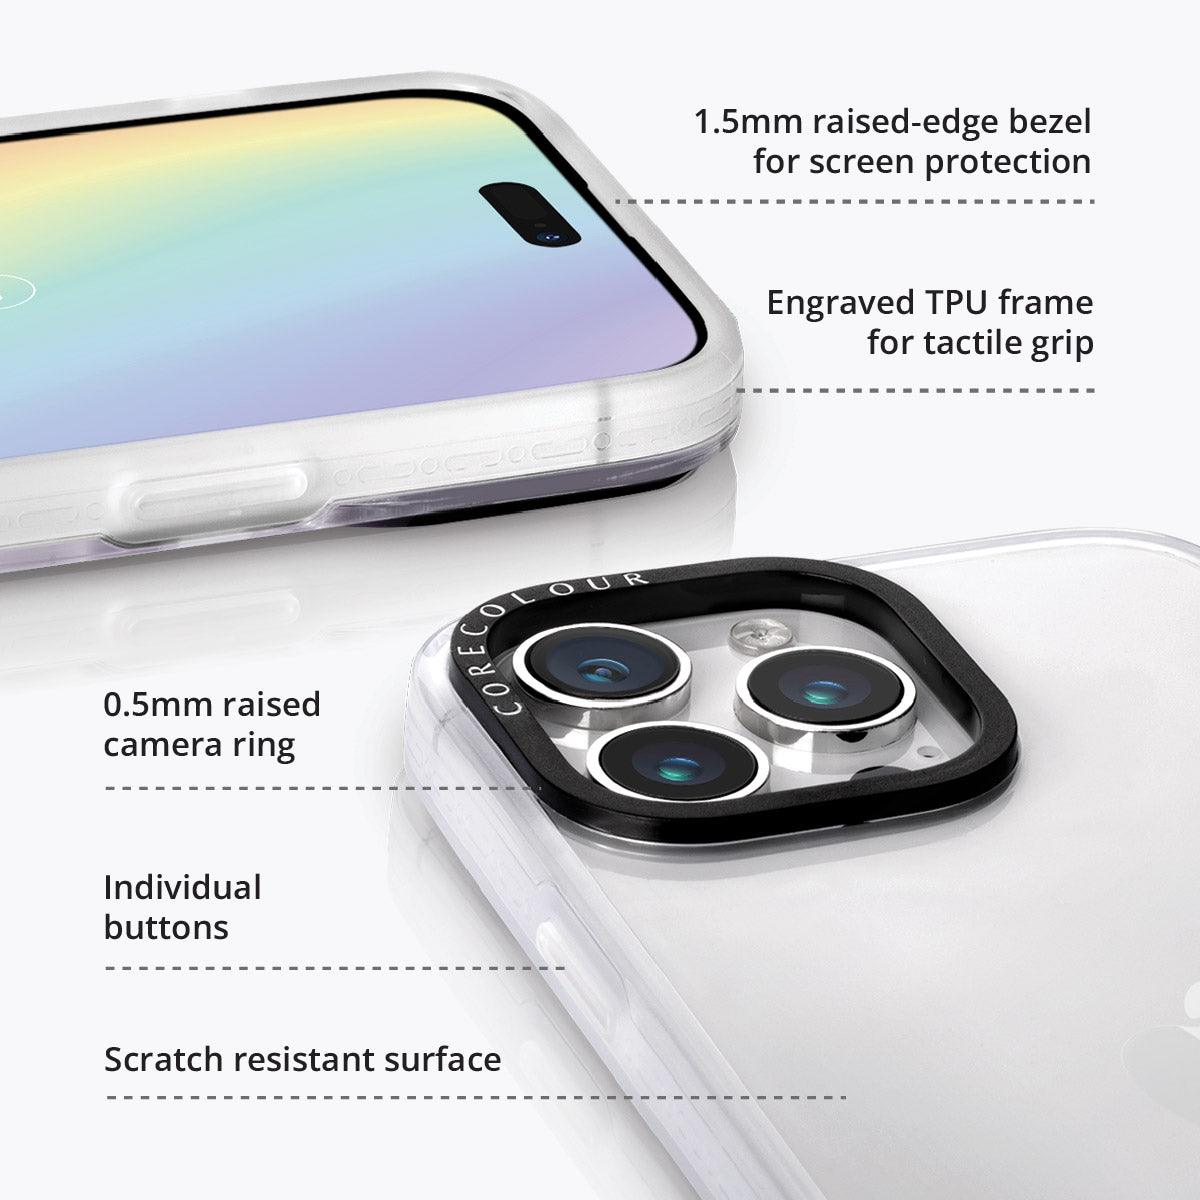 iPhone 14 Pro Minty Rosette Phone Case - CORECOLOUR AU